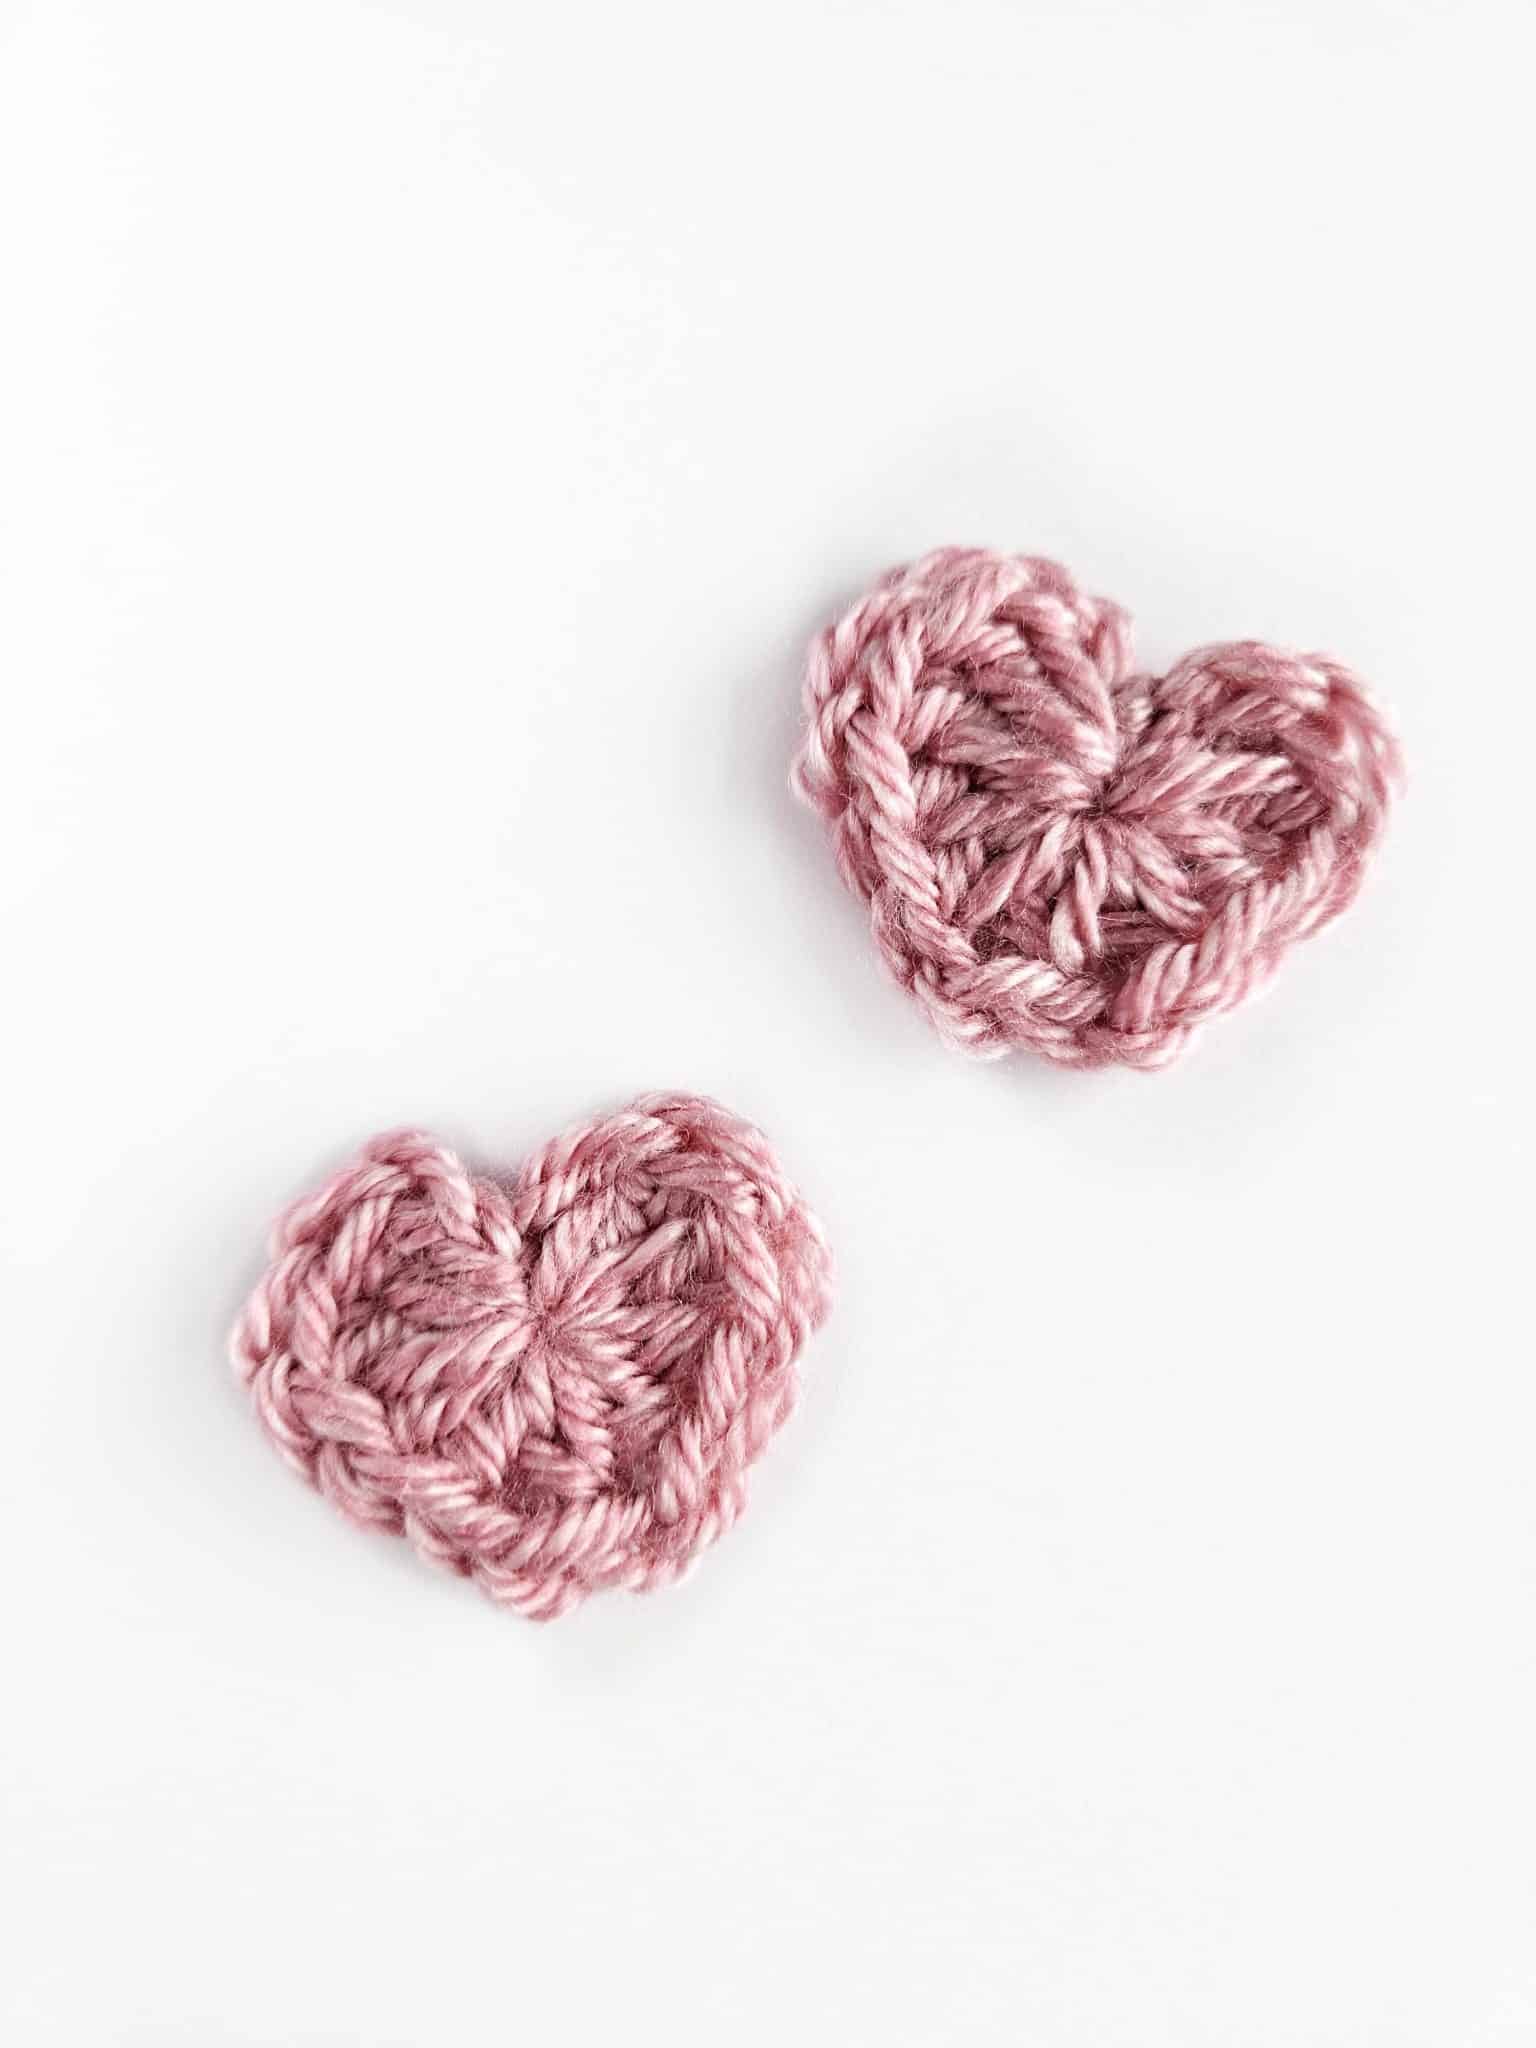 15 Minute Heart Free Crochet Pattern + Video